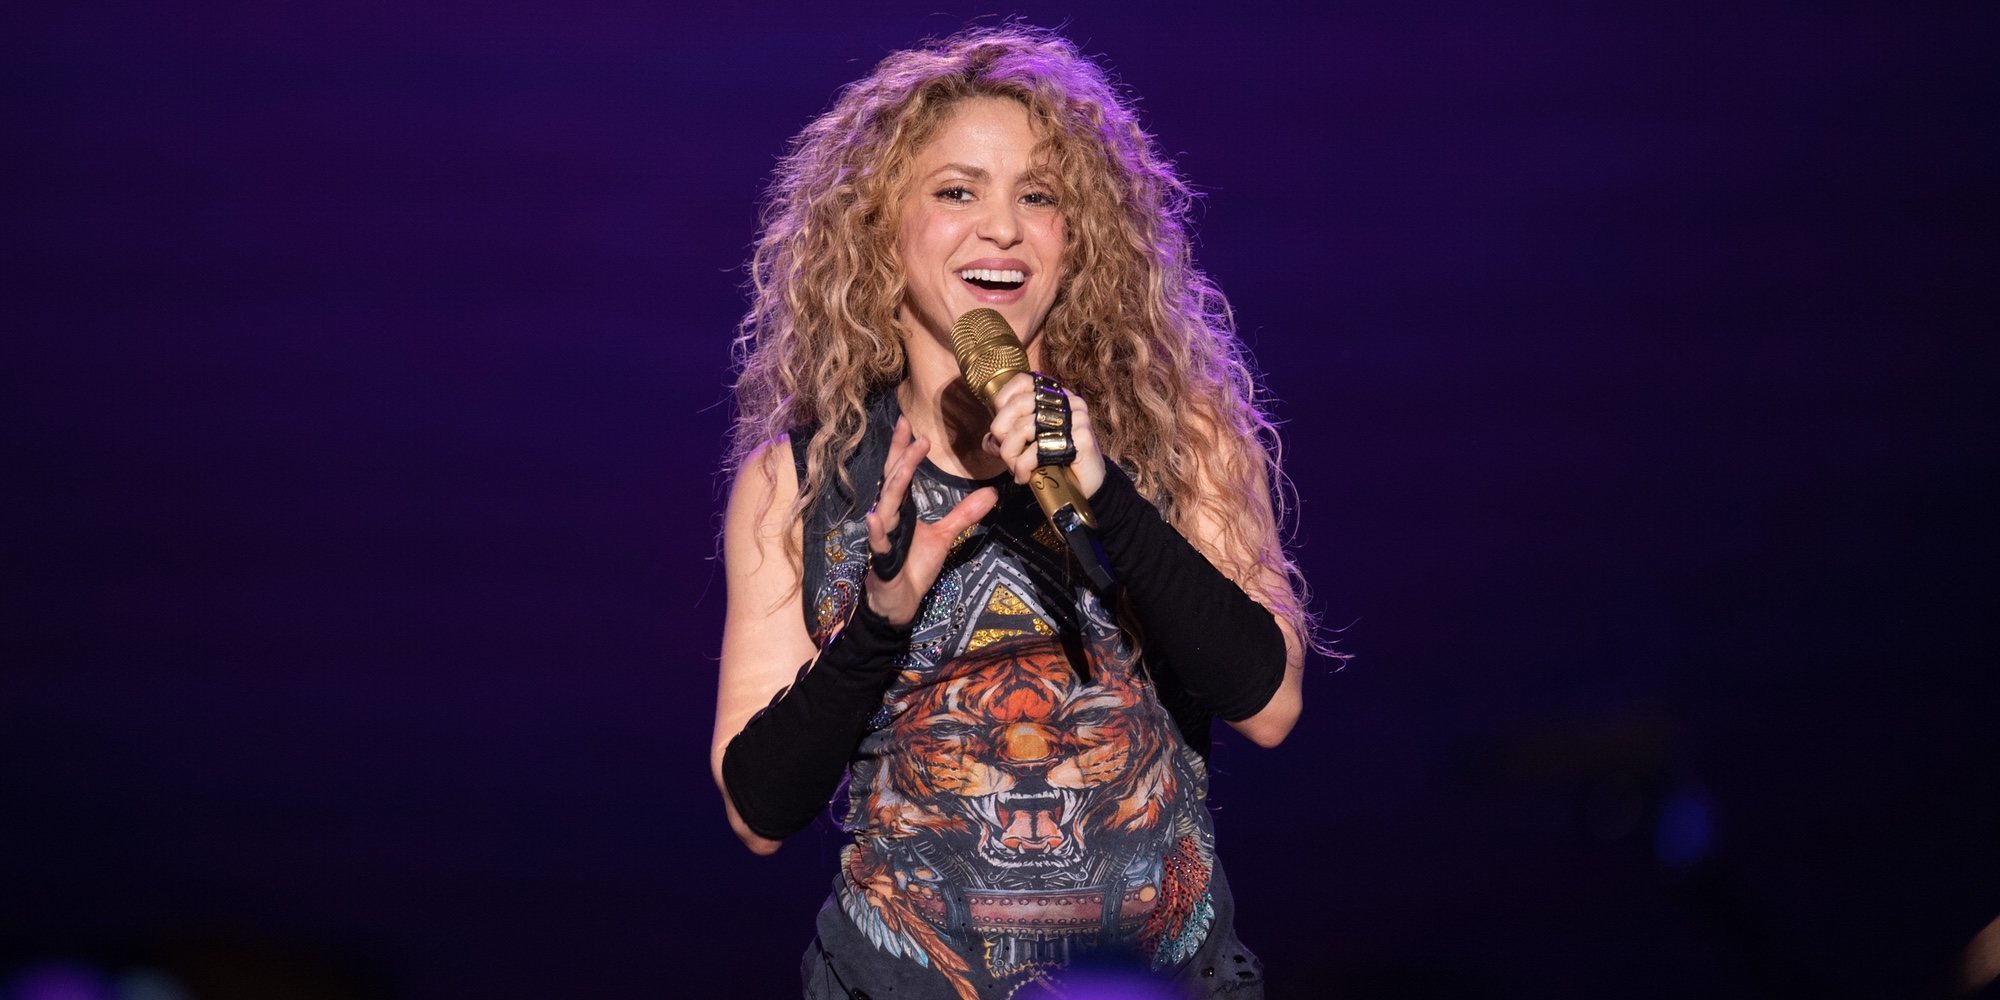 Shakira defiende a un fan que se abalanzó sobre ella en su concierto en México